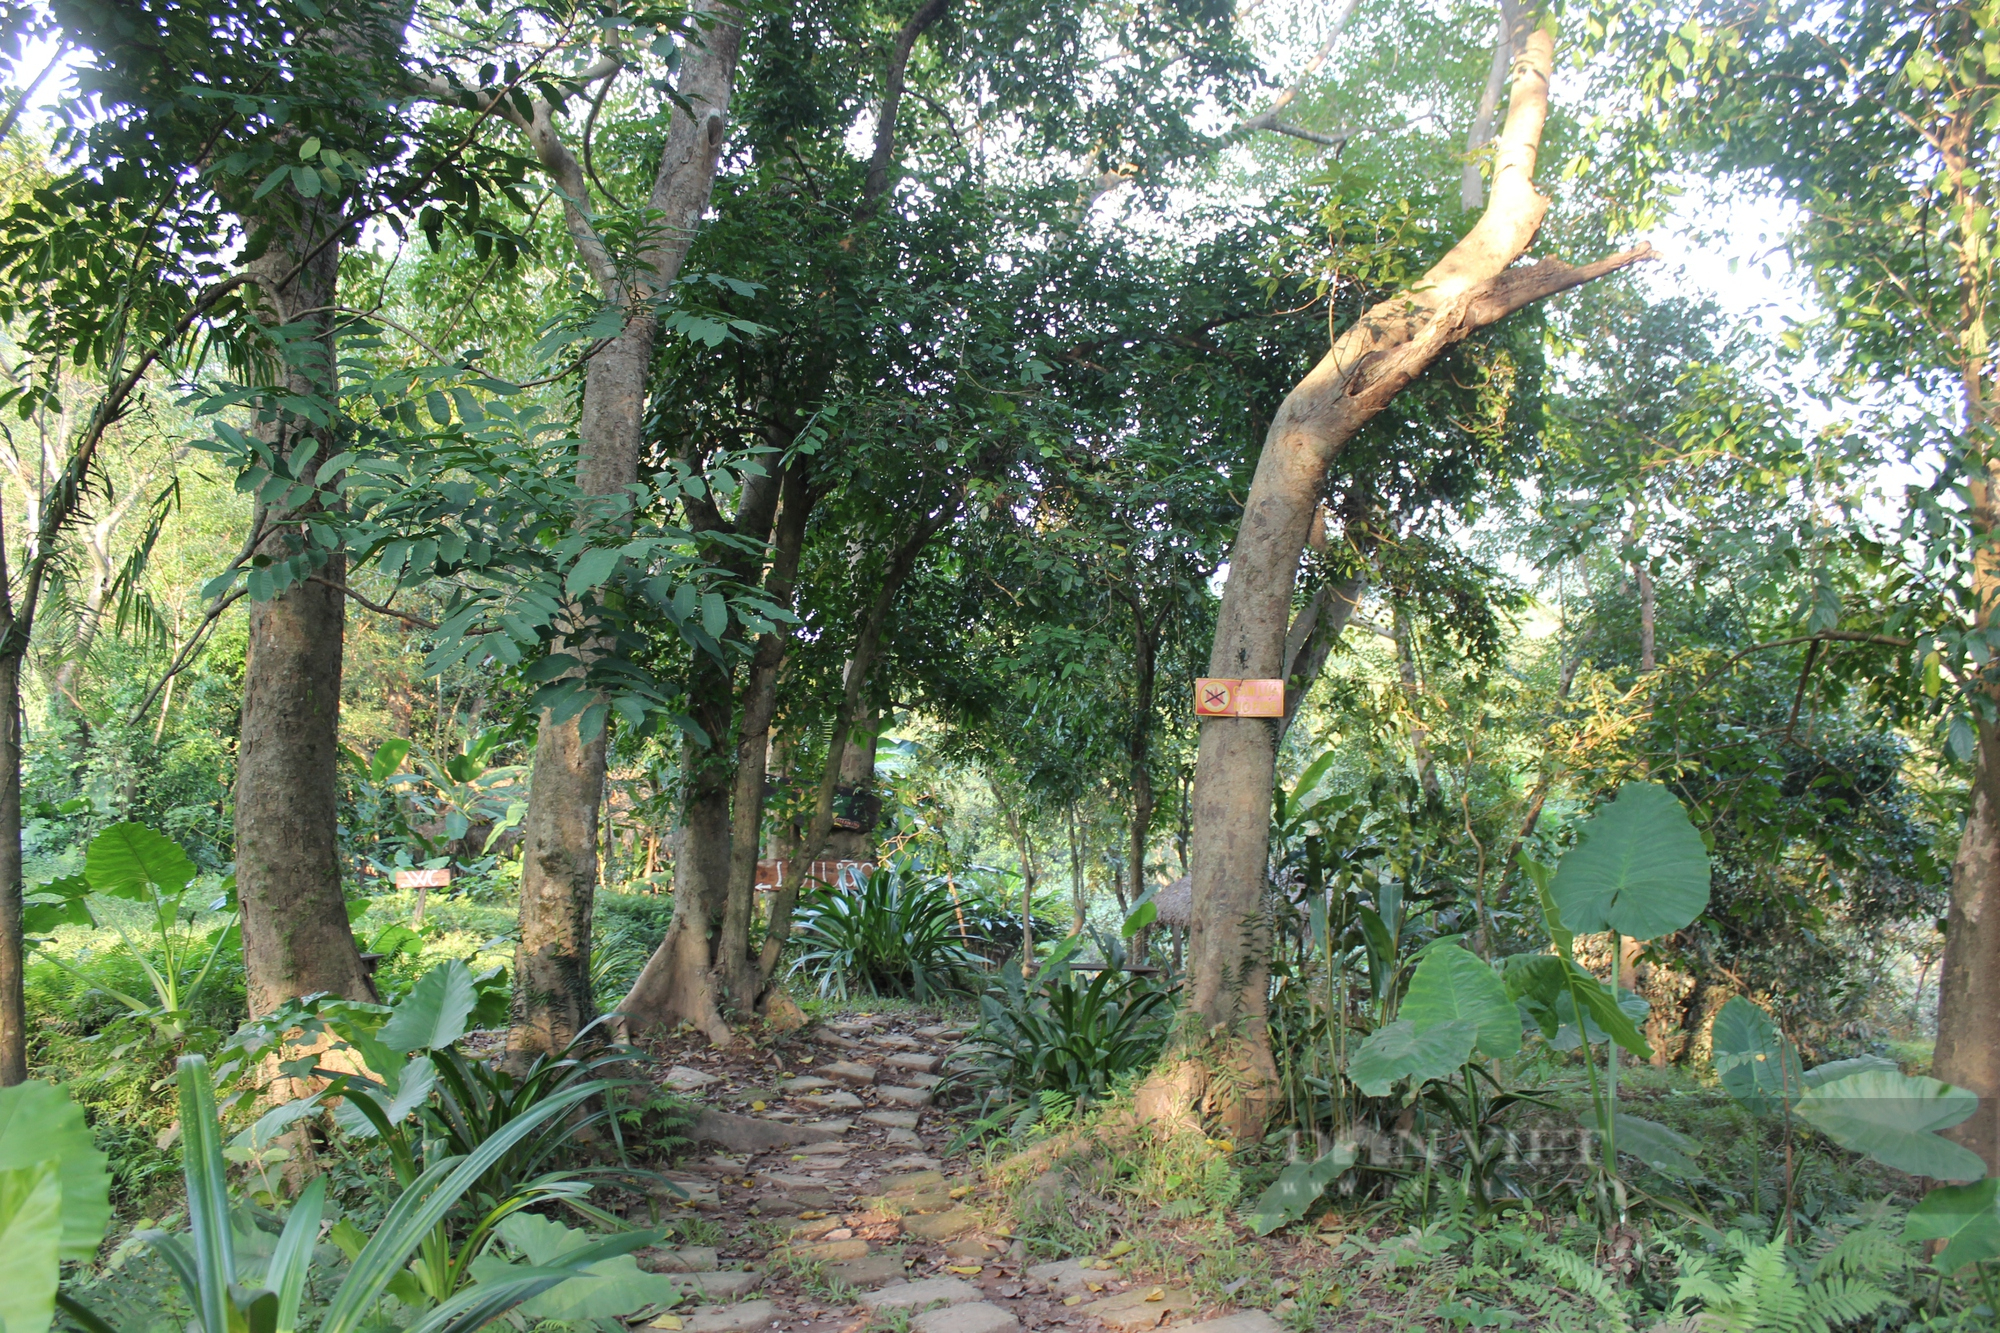 Cận cảnh khu du lịch lấn chiếm gần 40.000 m2 đất rừng trong di sản Phong Nha - Kẻ Bàng - Ảnh 3.